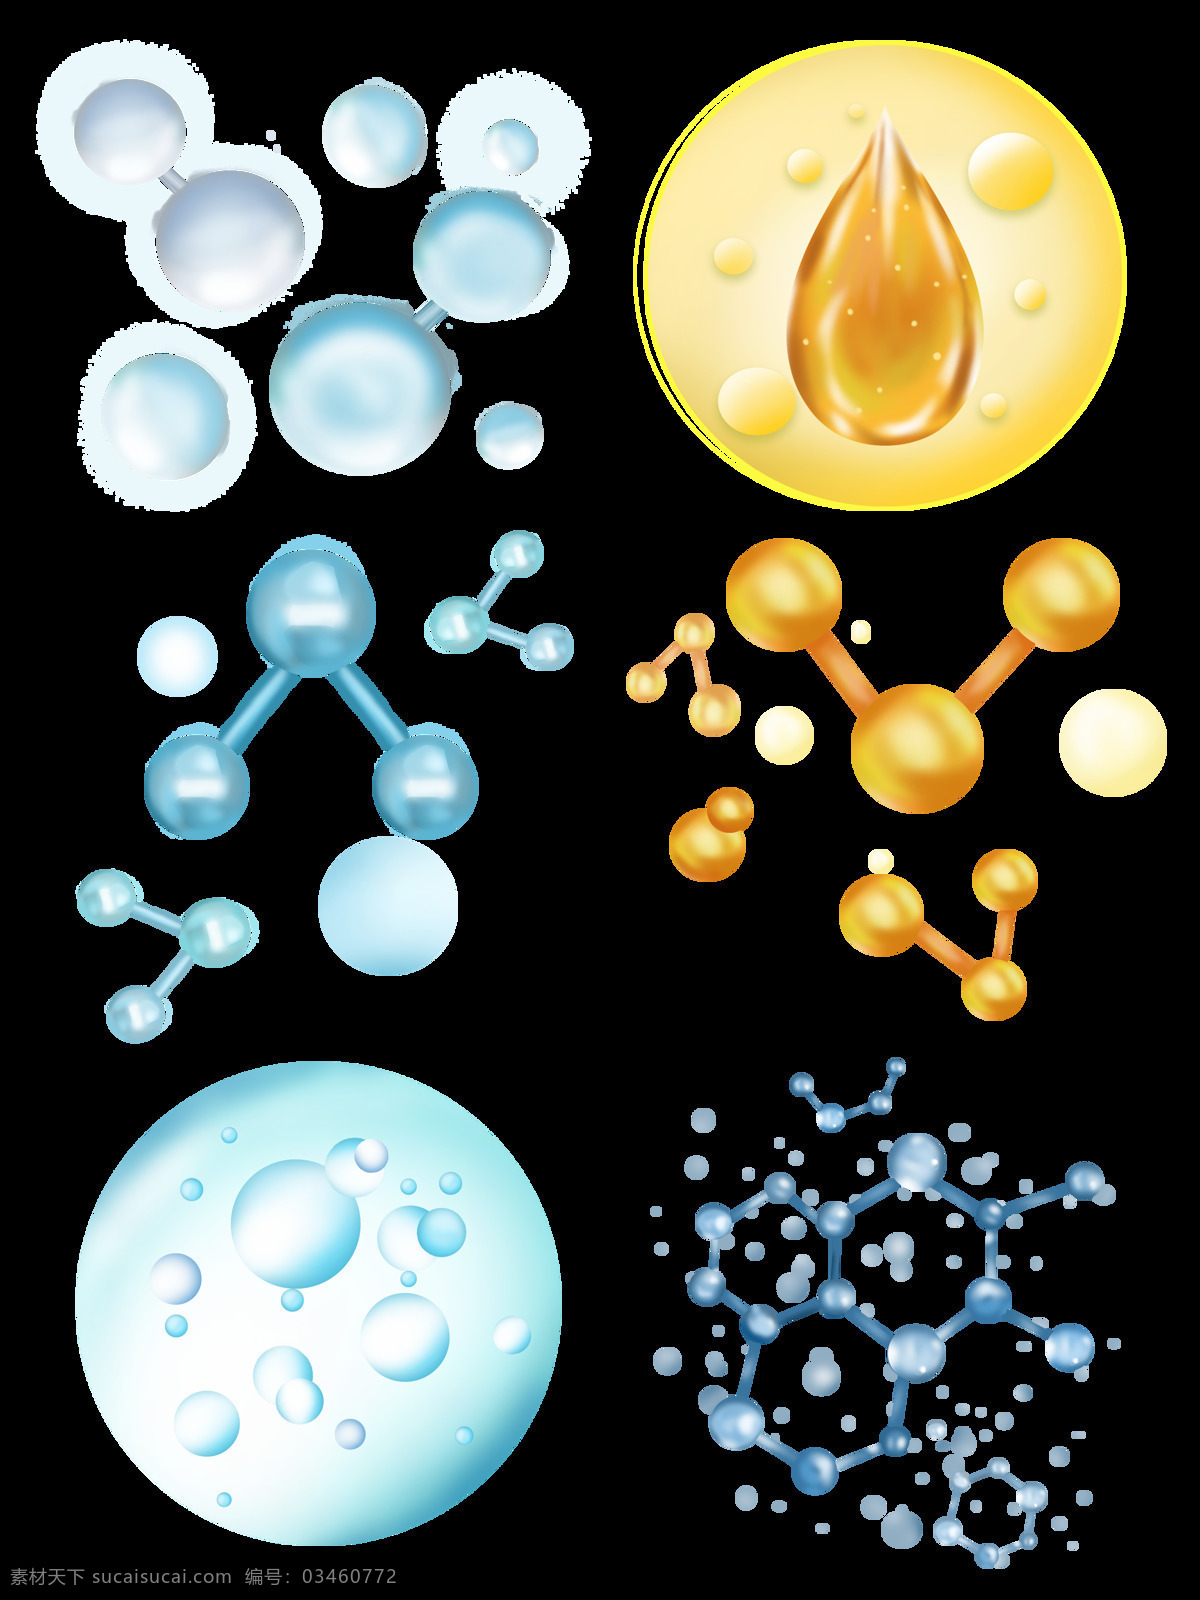 晶莹剔透 水 分子 元素 水分 子结构 元 晶莹 剔透 子元素 水分子 结构 科技 蓝色 水滴 企业 黄色 油 粒子 标志图标 公共标识标志